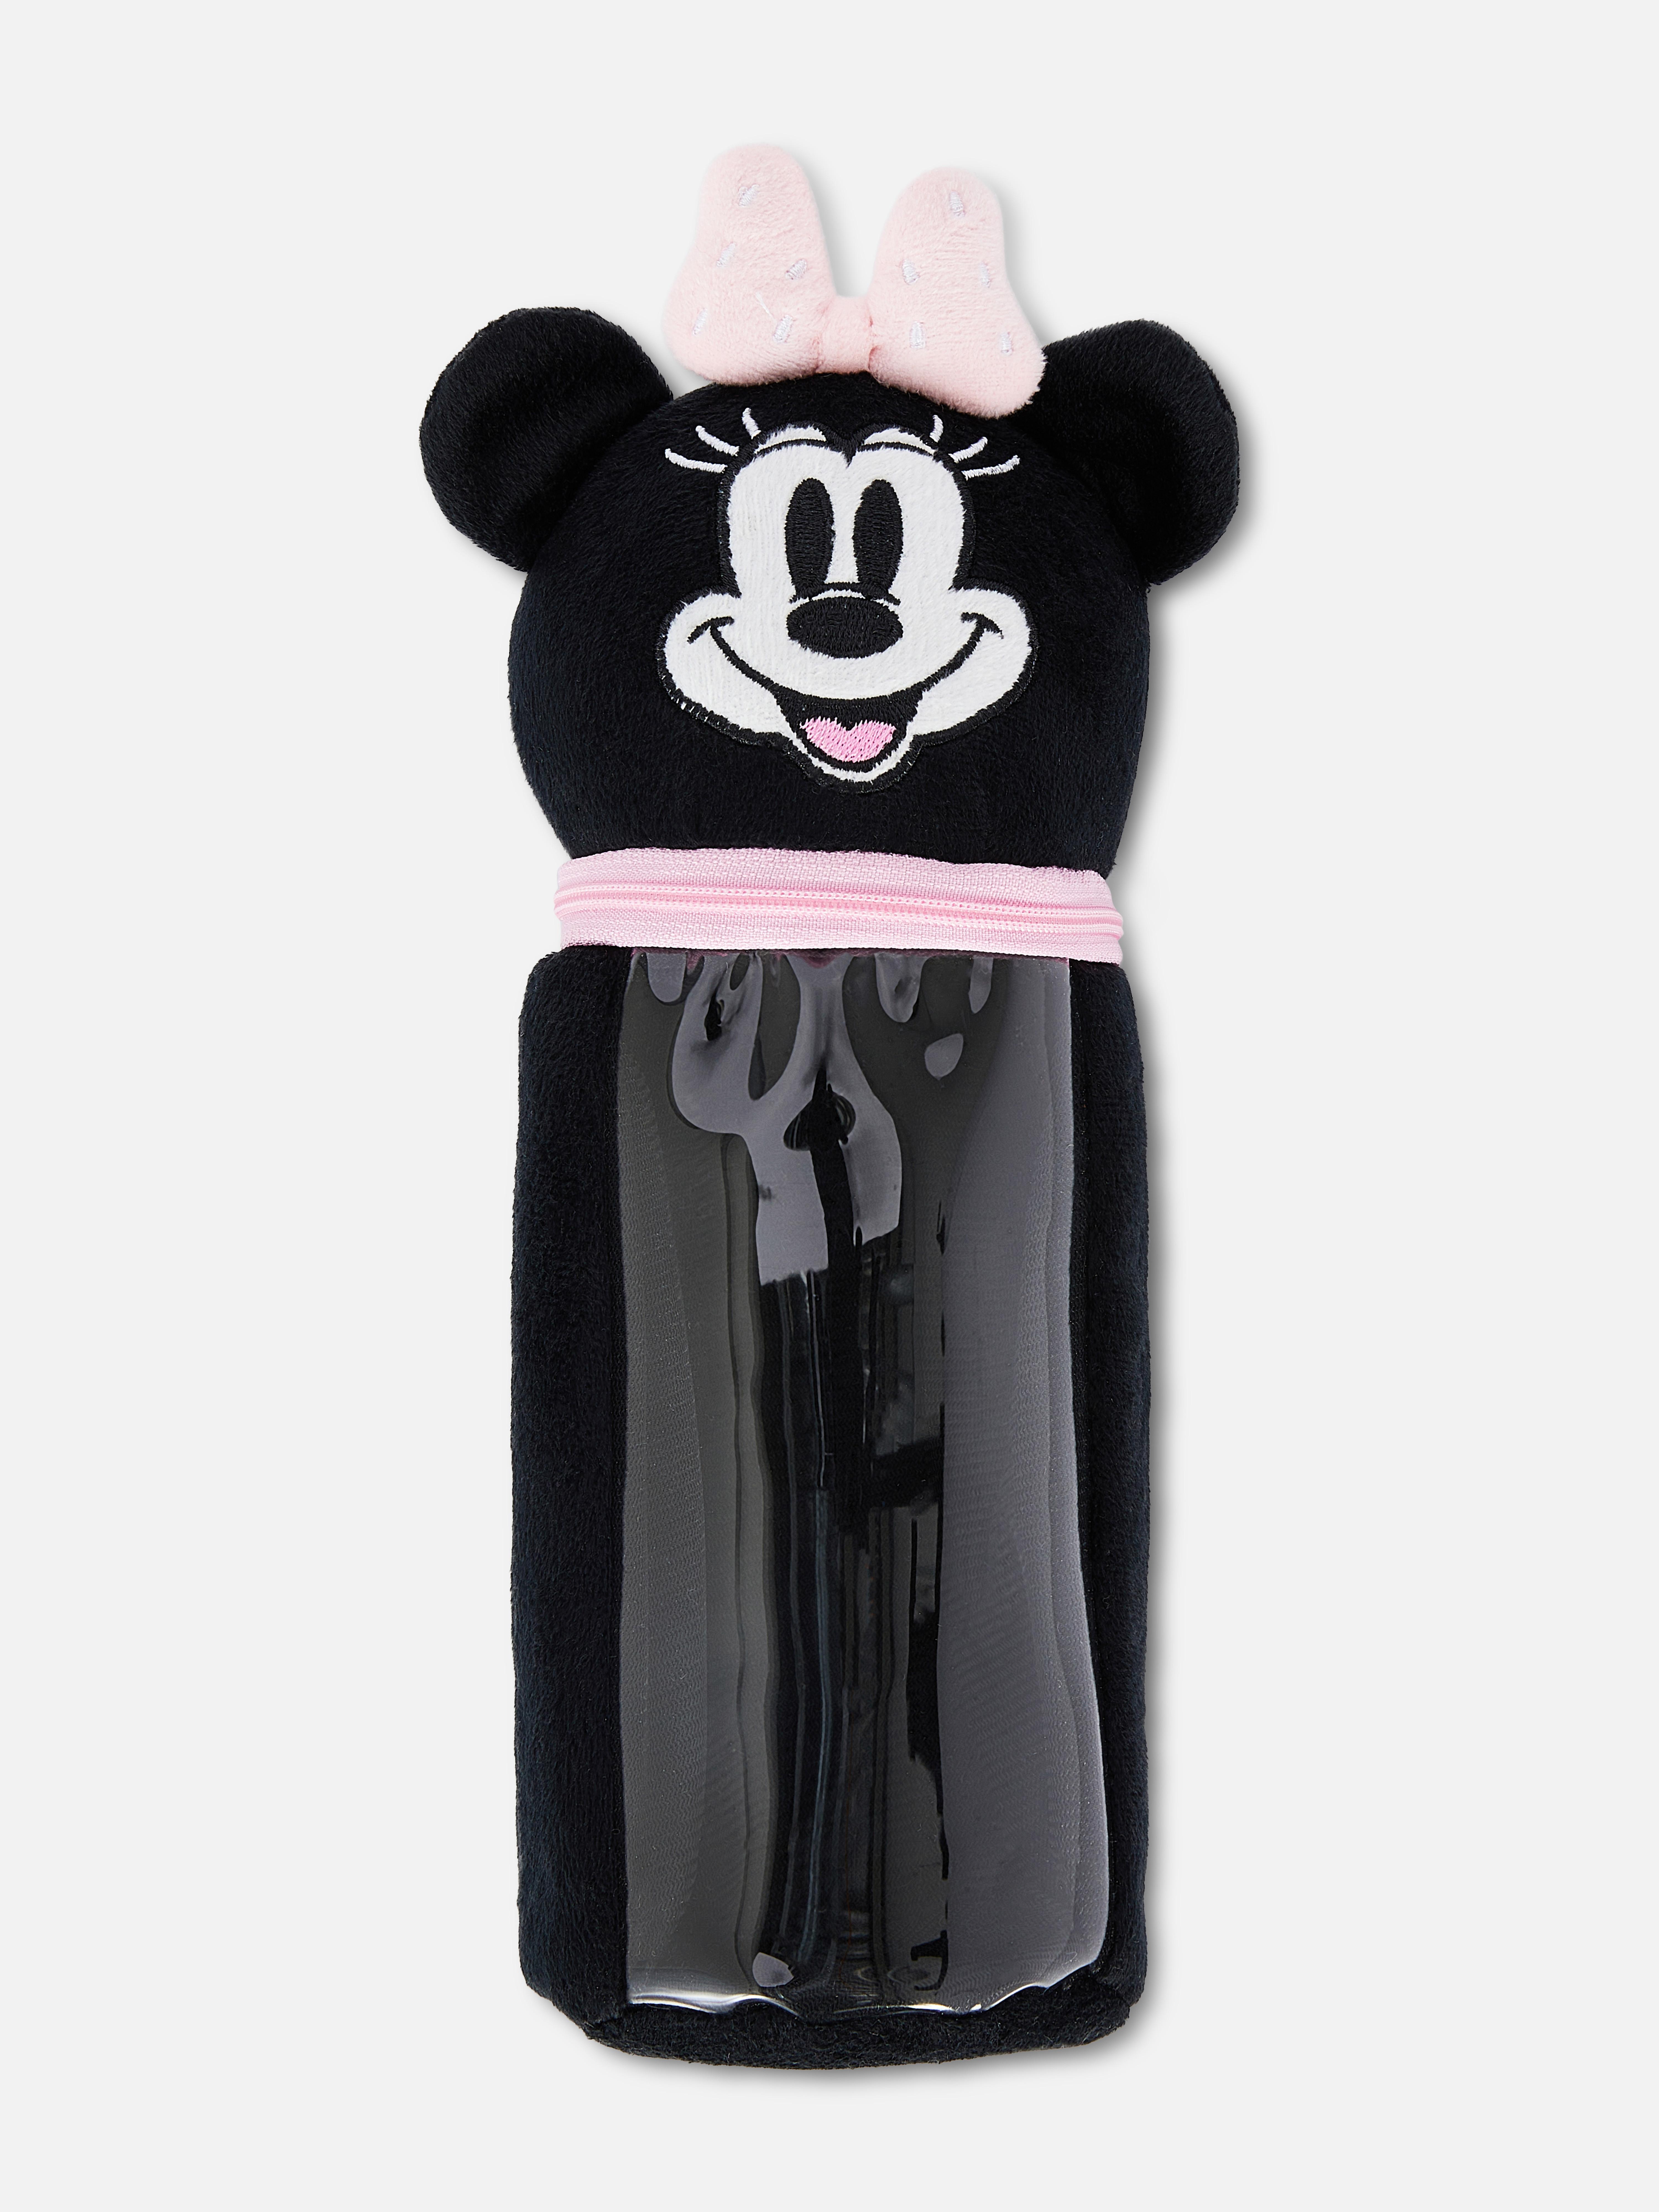 Disney's Minnie Mouse Plush Pencil Case